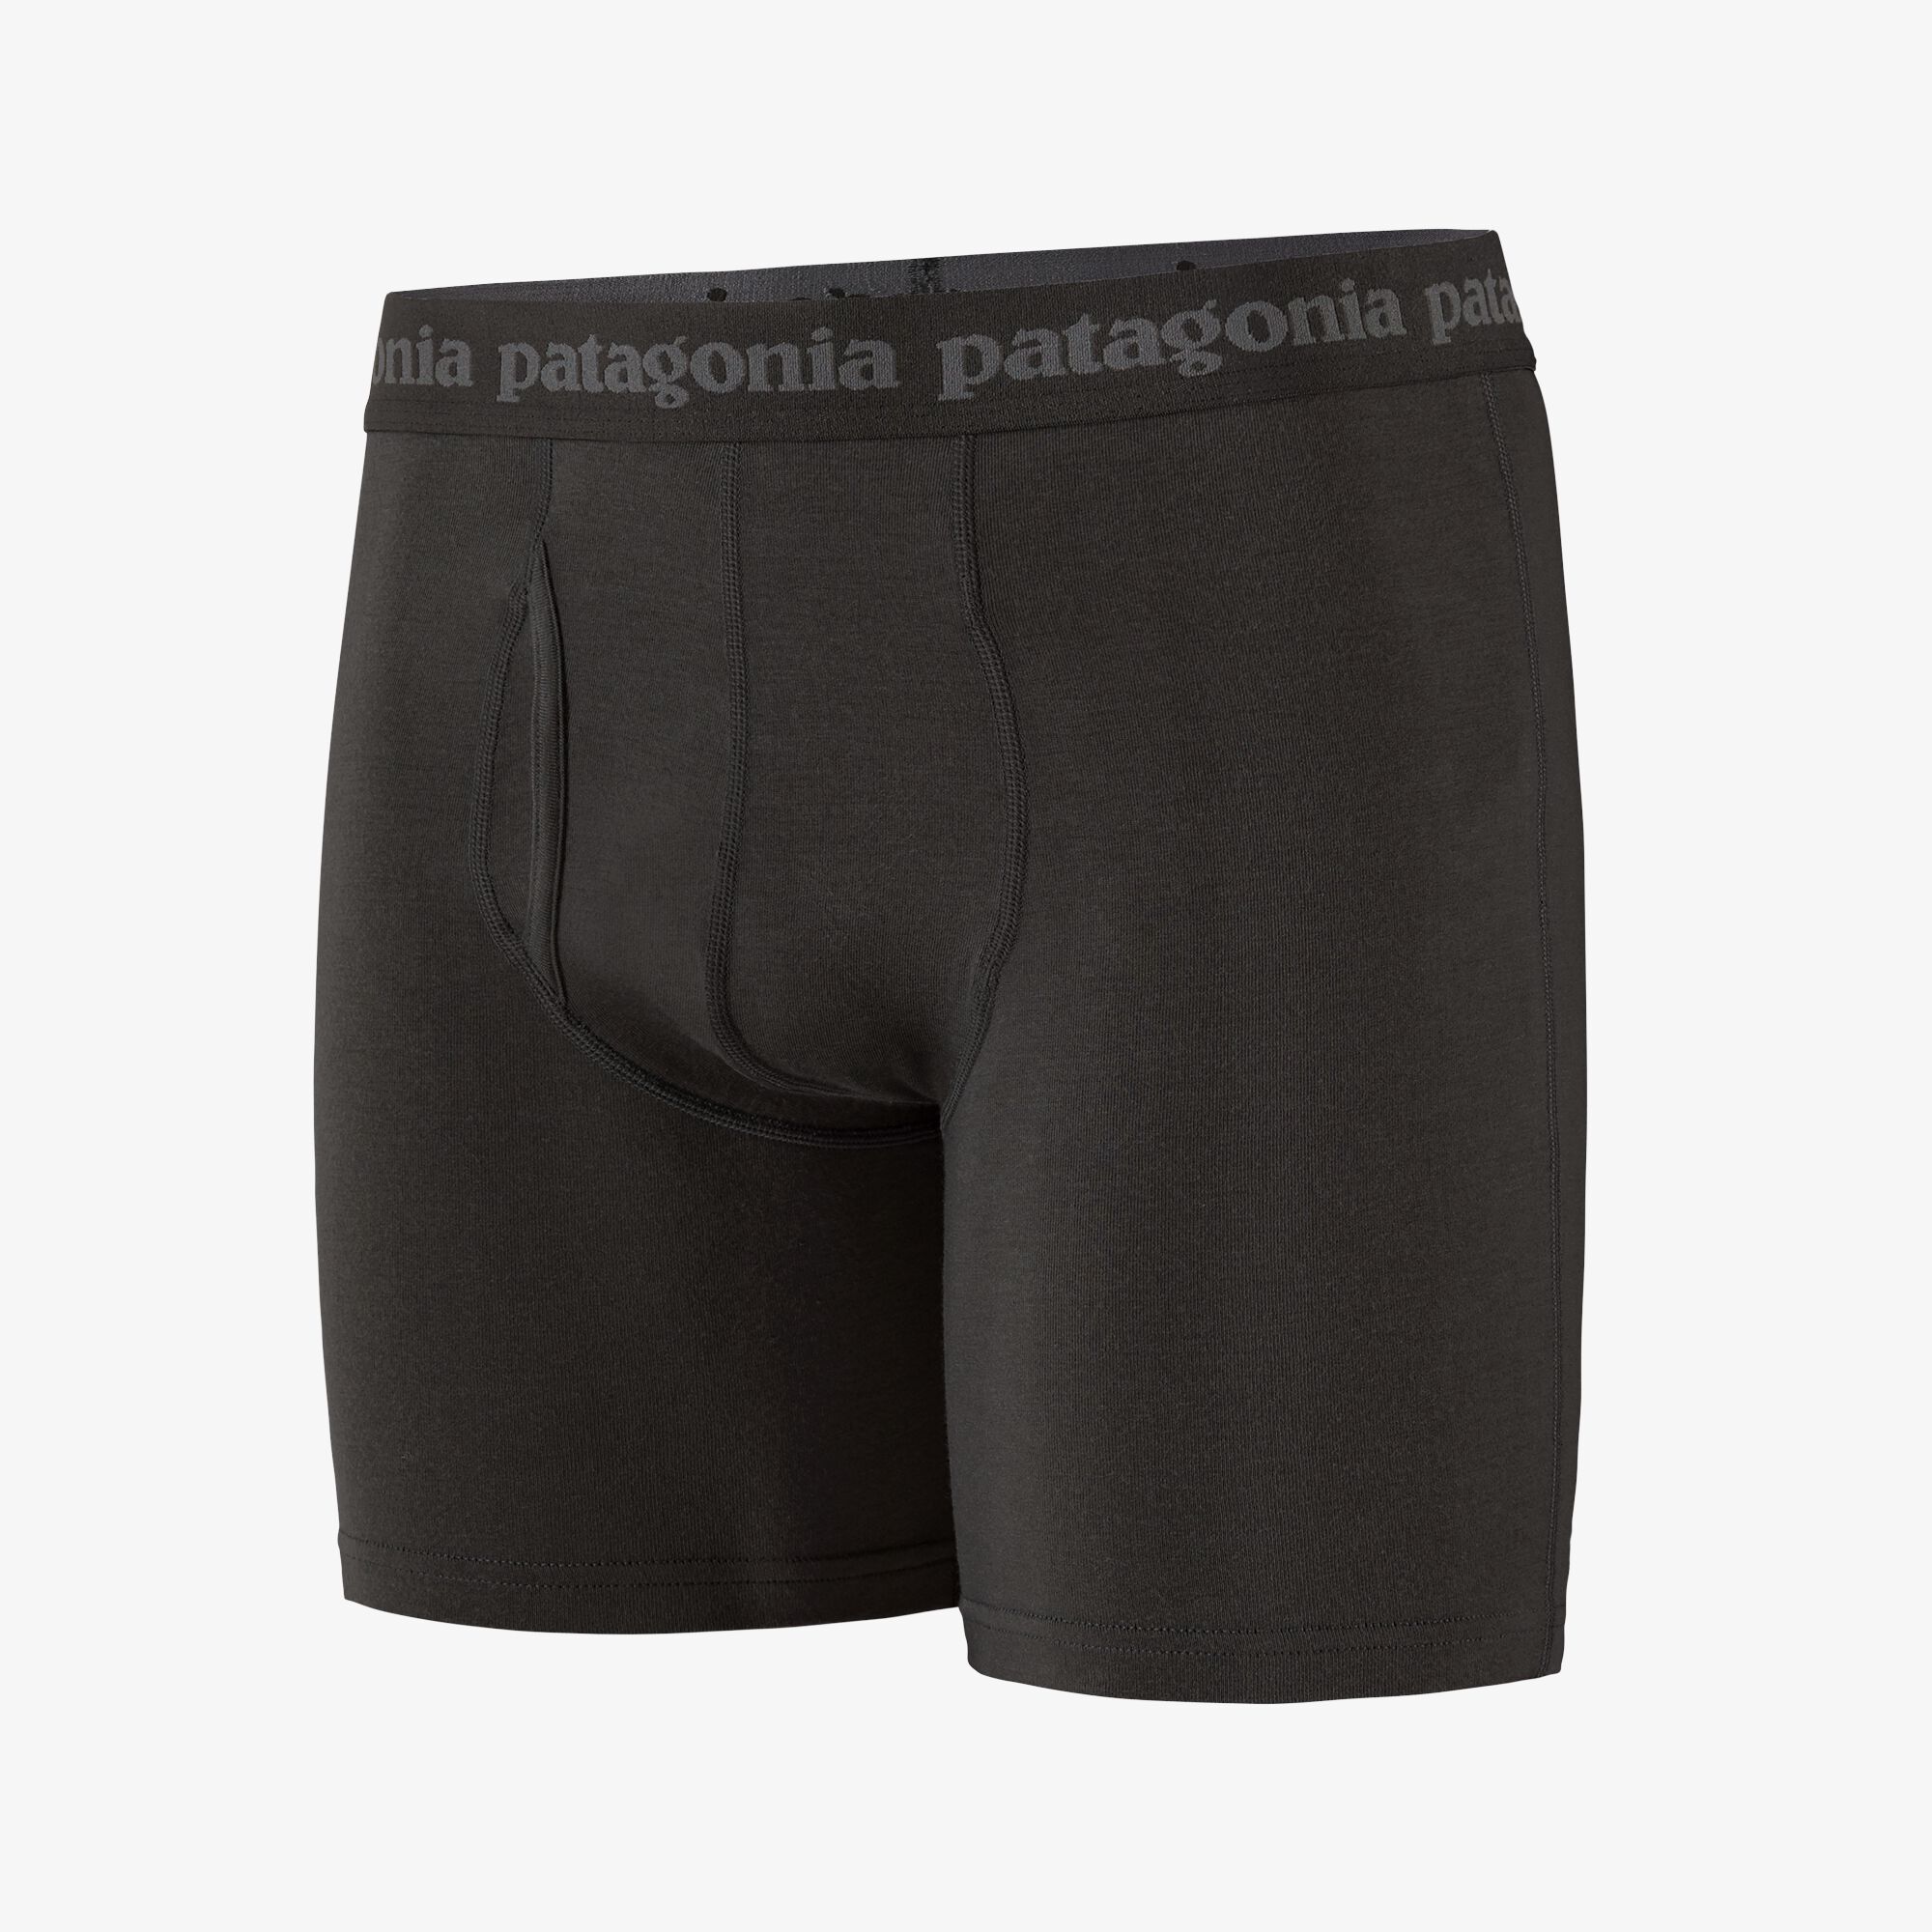 Patagonia Men's Essential Boxer 6